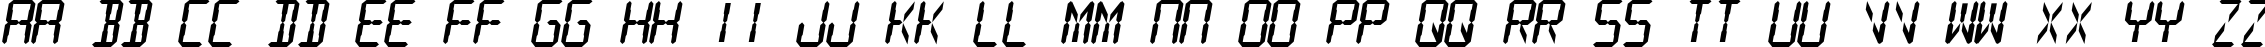 Пример написания английского алфавита шрифтом Digital Readout Thick